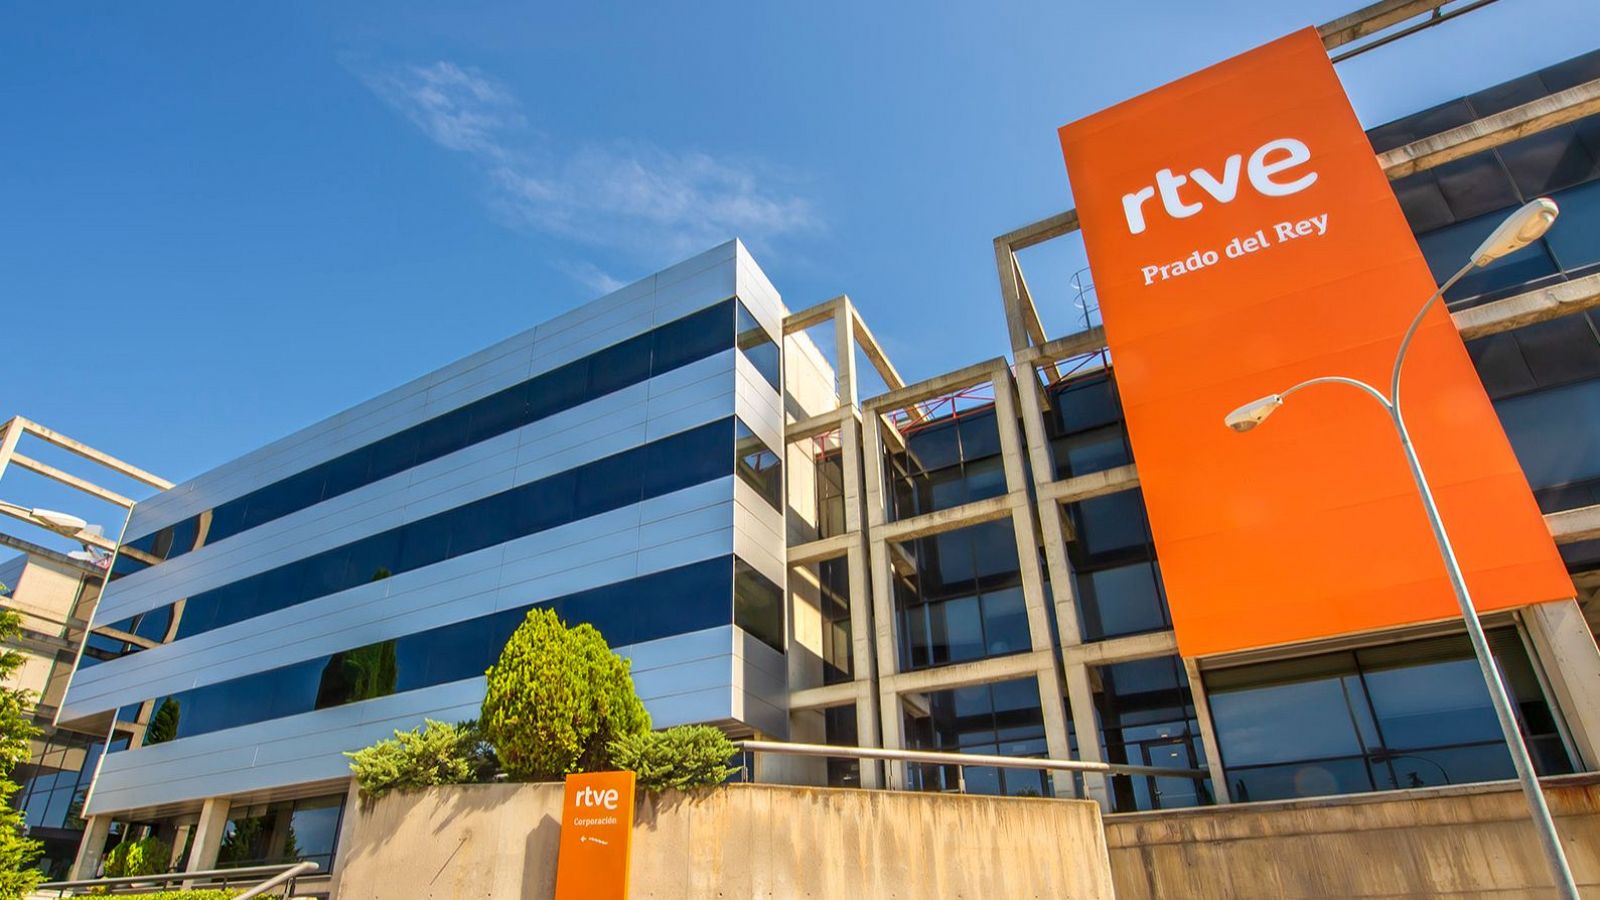 Edificio Prado del Rey en la sede de RTVE de Madrid